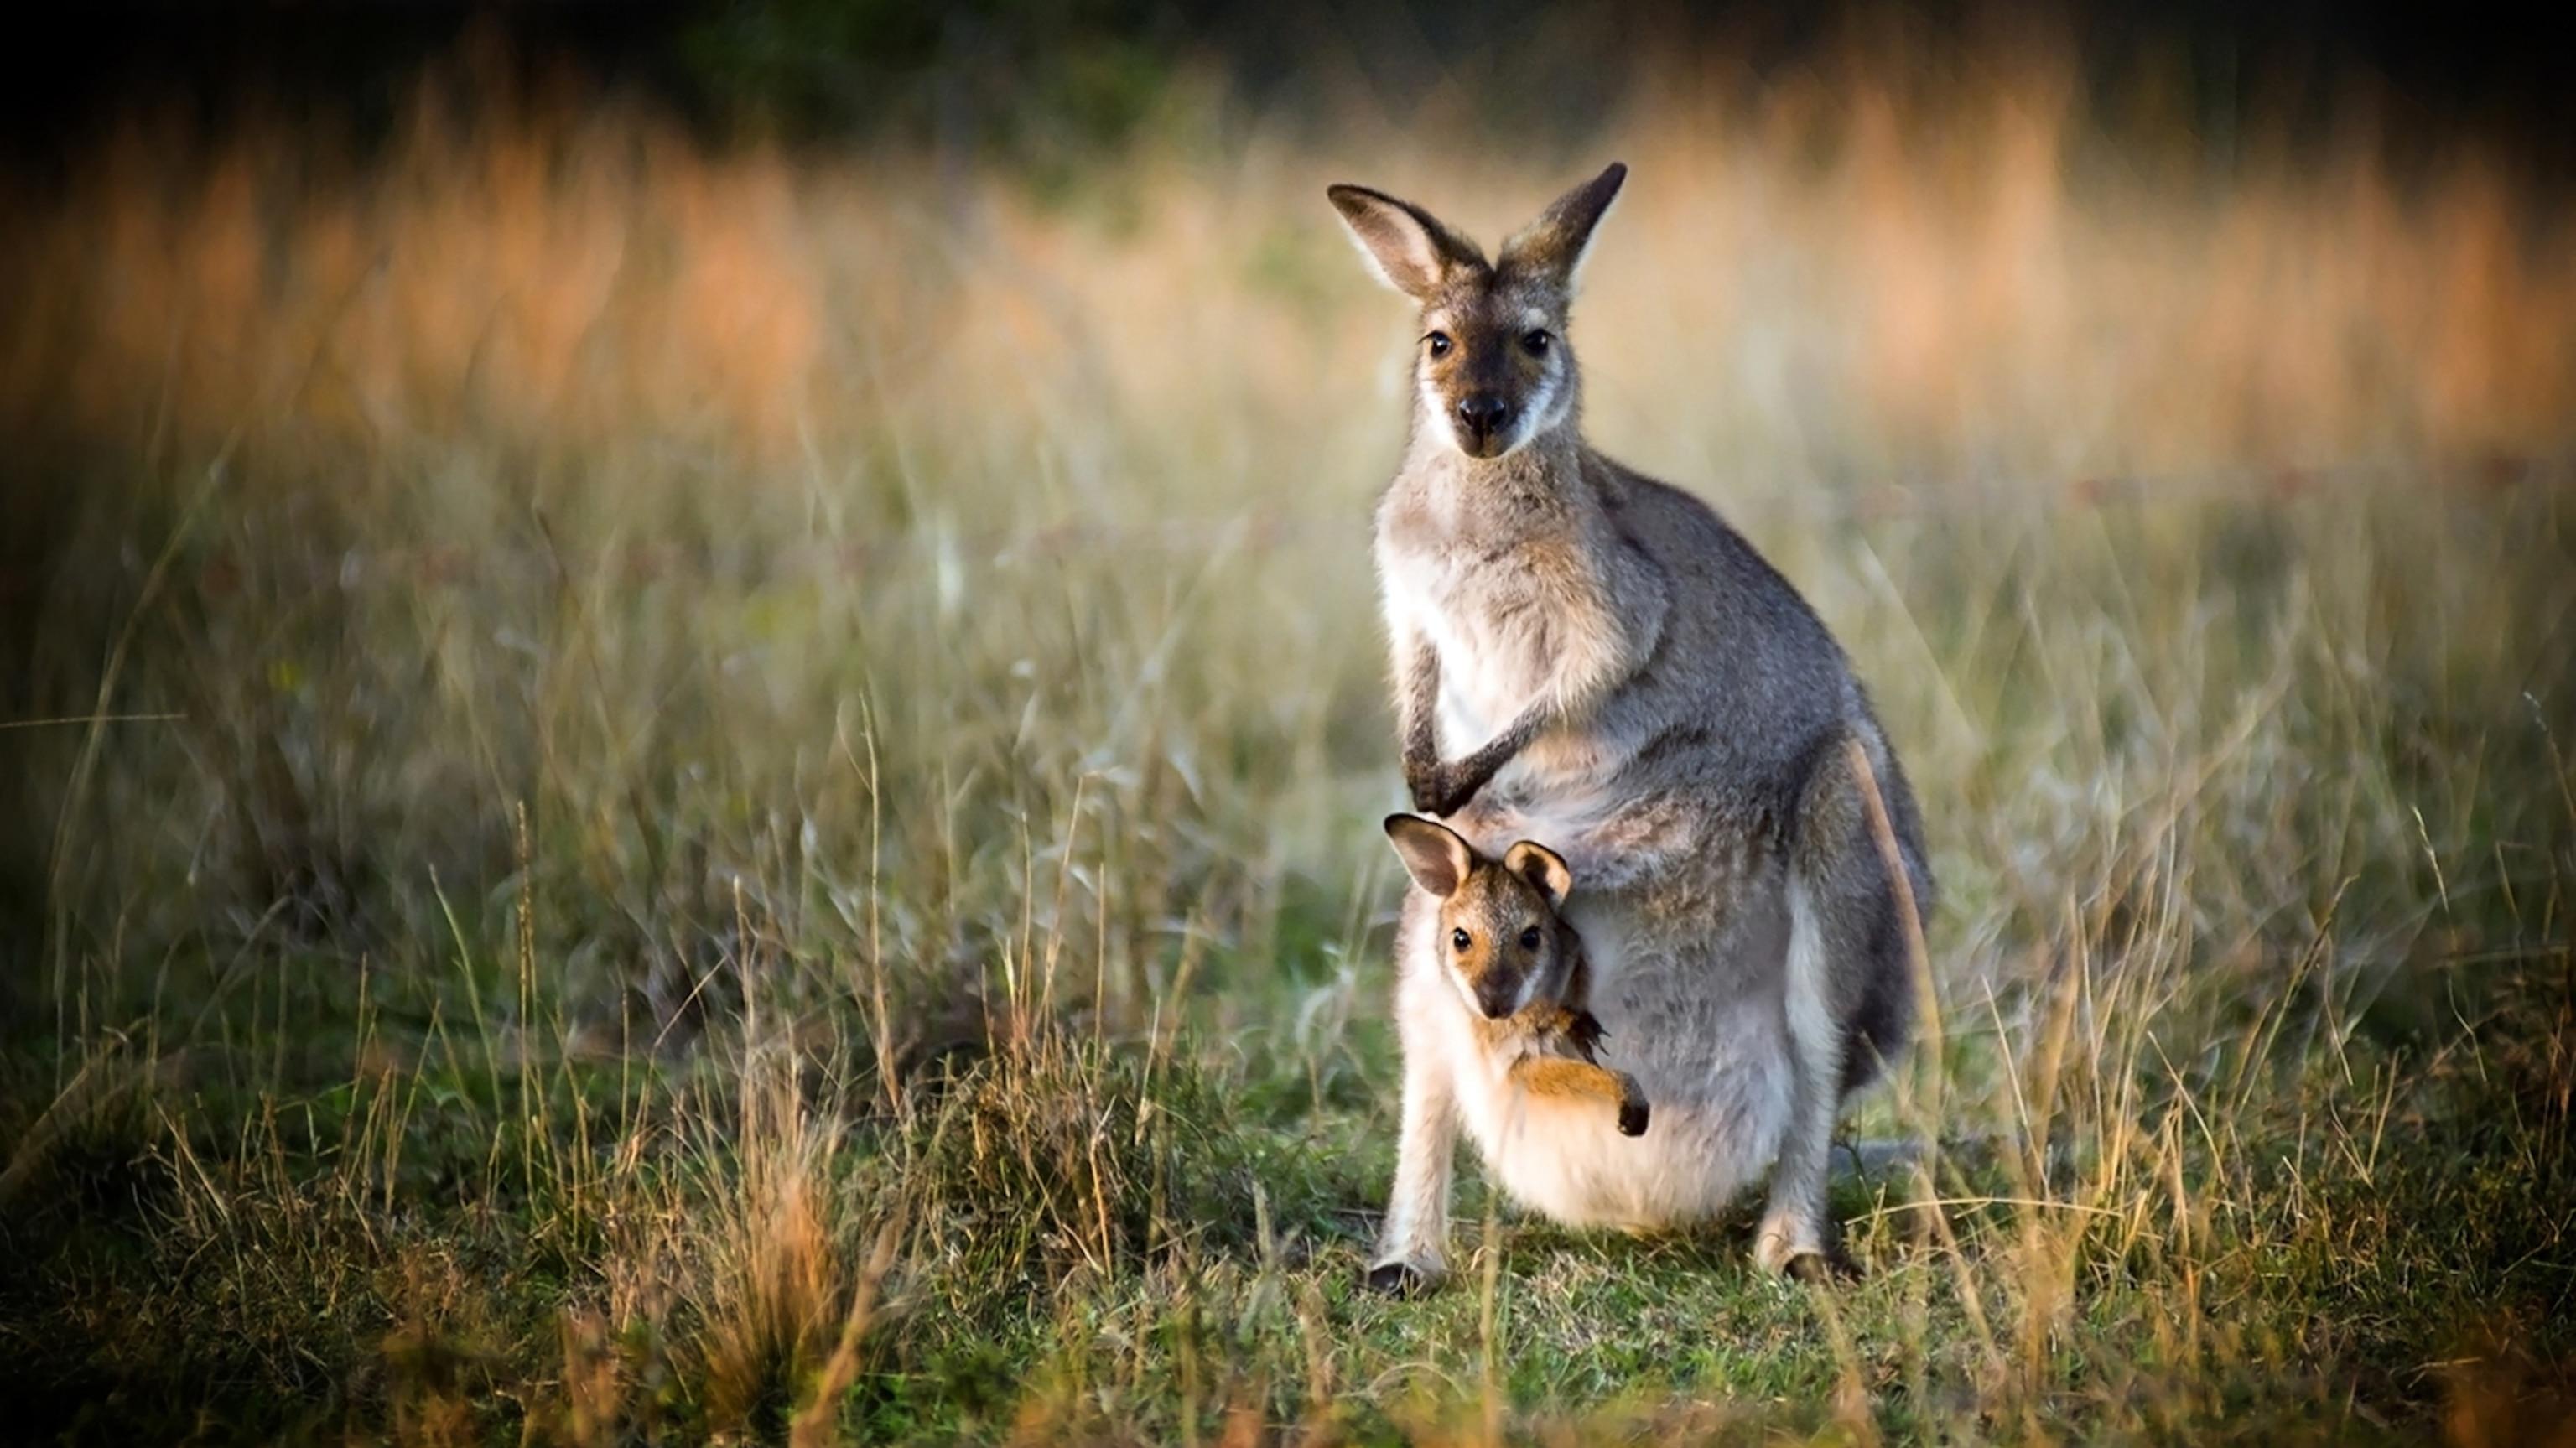 Kangaroo Facts And Photos